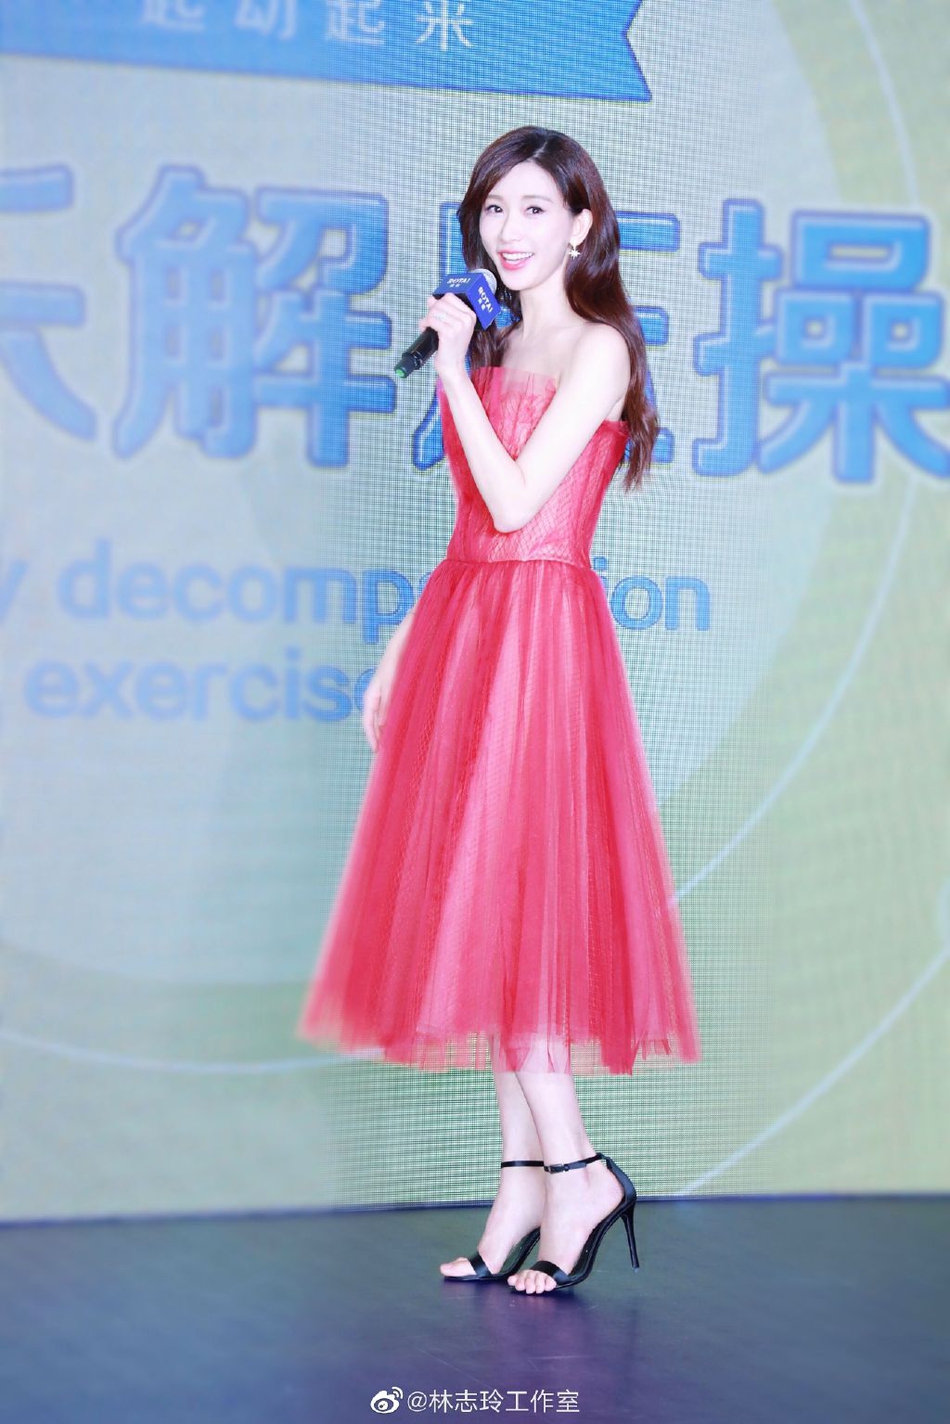 新浪娱乐讯 2019年5月10日,上海,林志玲出席母亲节活动,一抹红色长裙